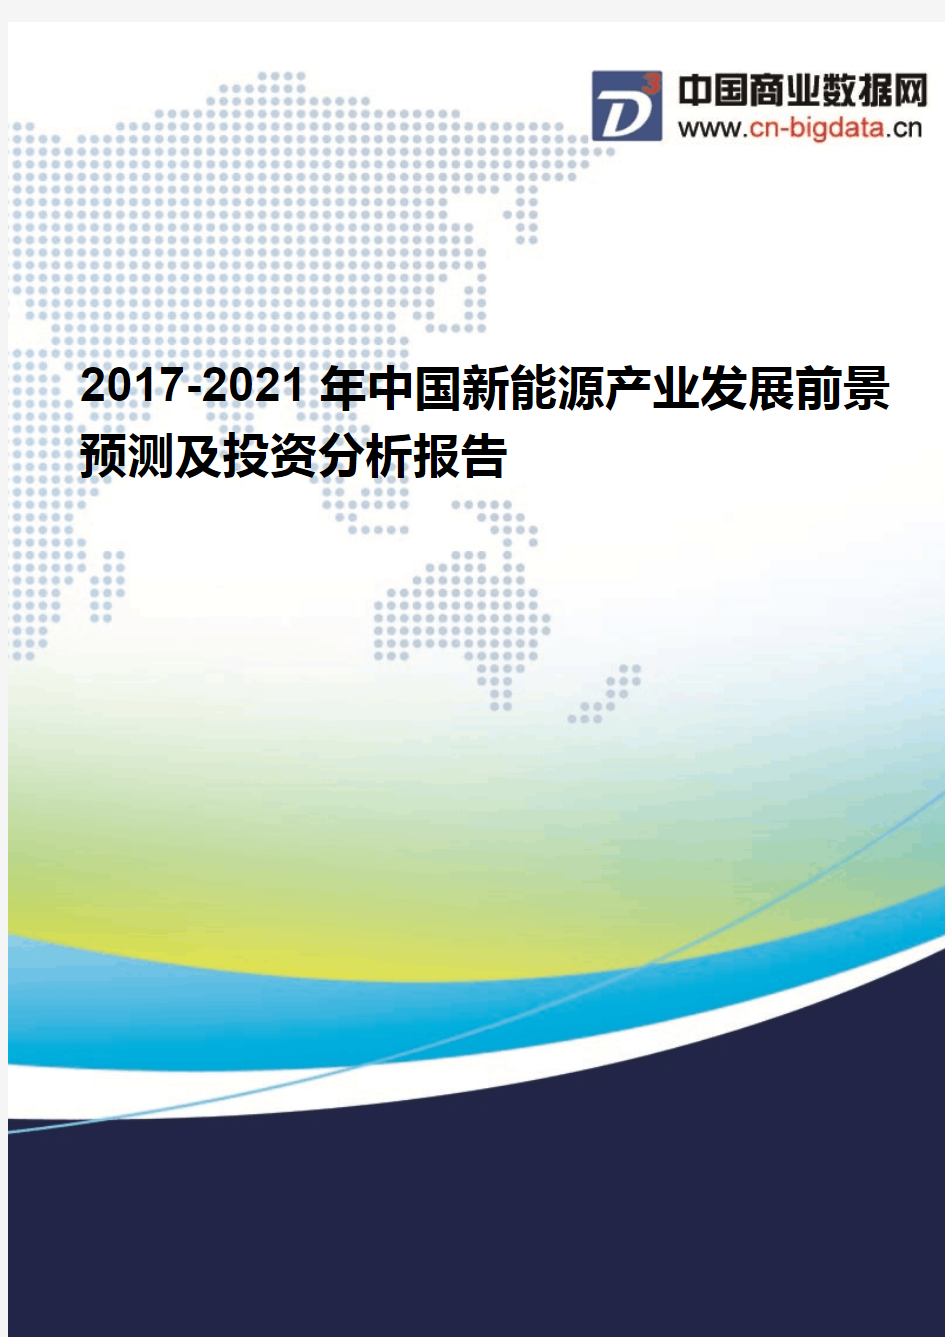 2017-2021年中国新能源产业发展前景预测及投资分析报告